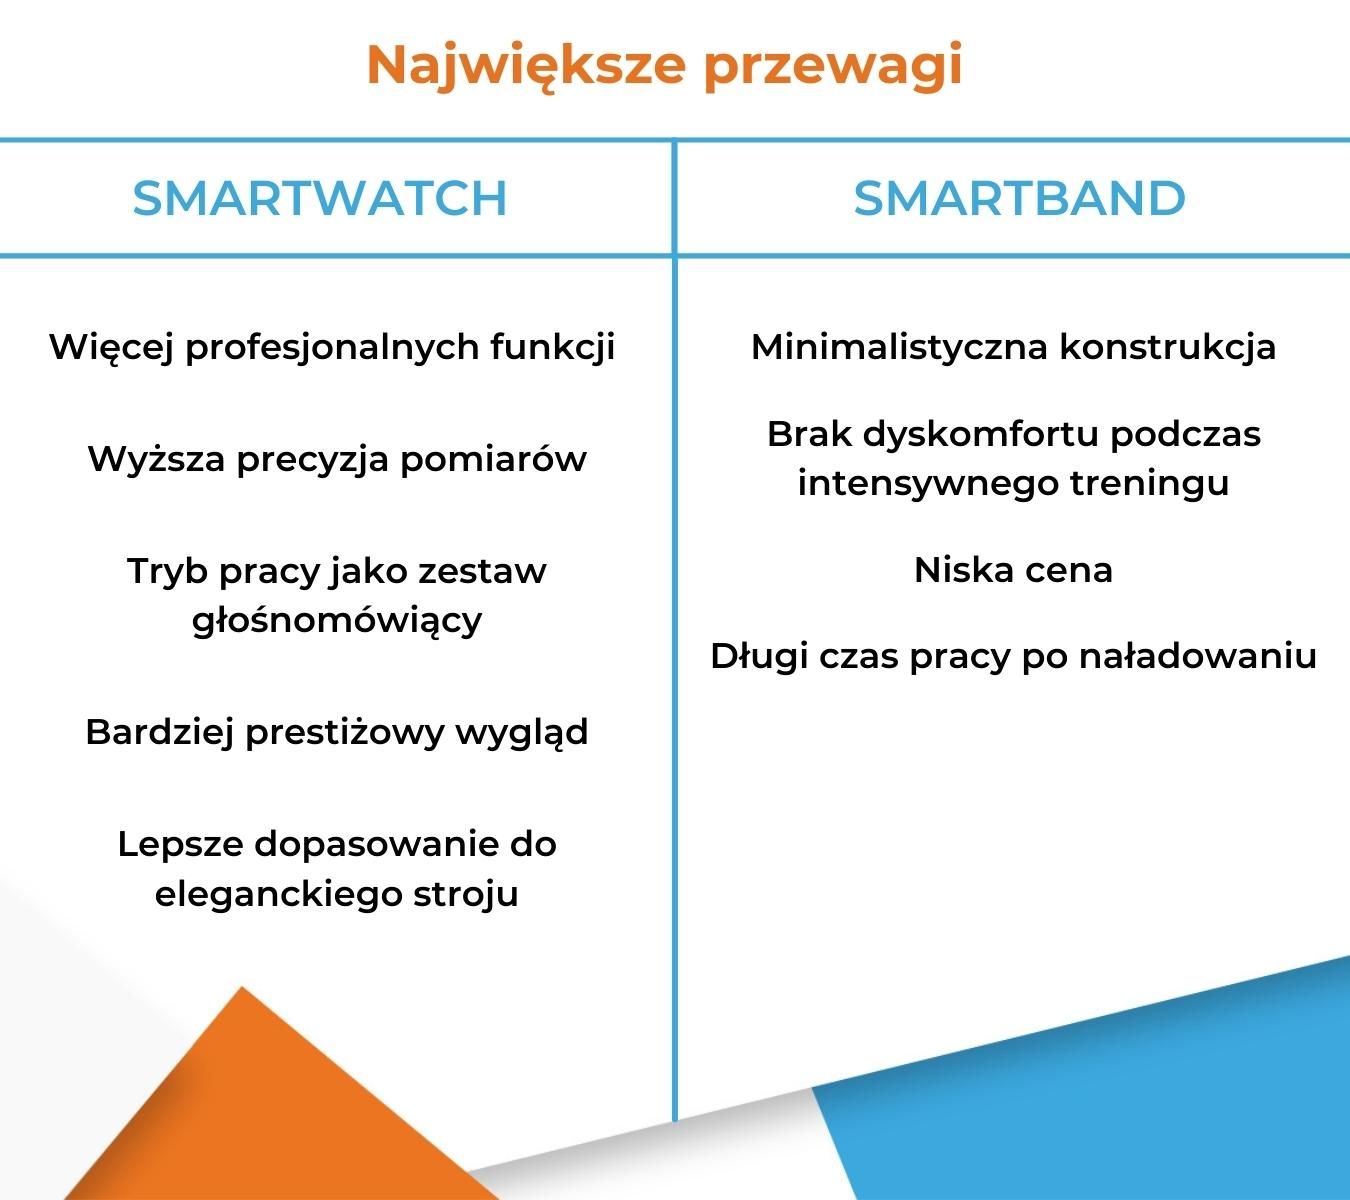 Smartwatch czy smartband - Co lepsze? Infografika